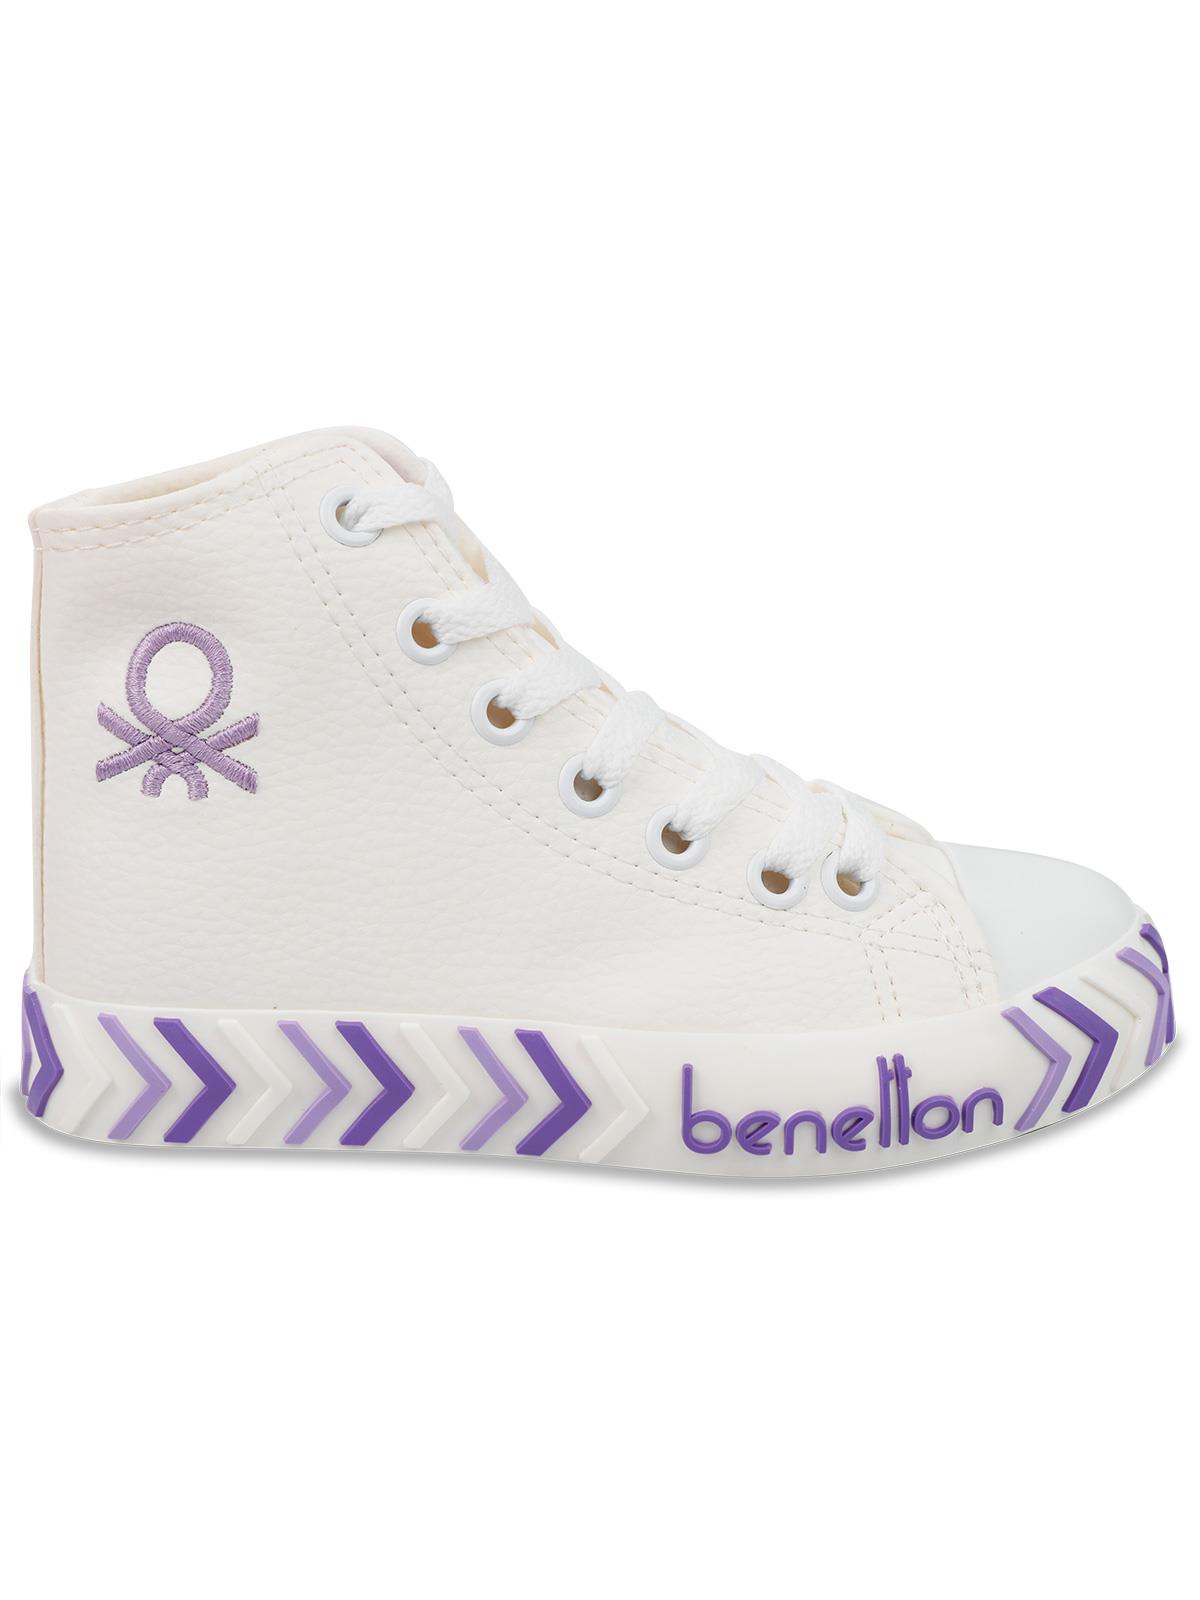 Benetton Kız Çocuk Spor Ayakkabı 31-35 Numara  Lila